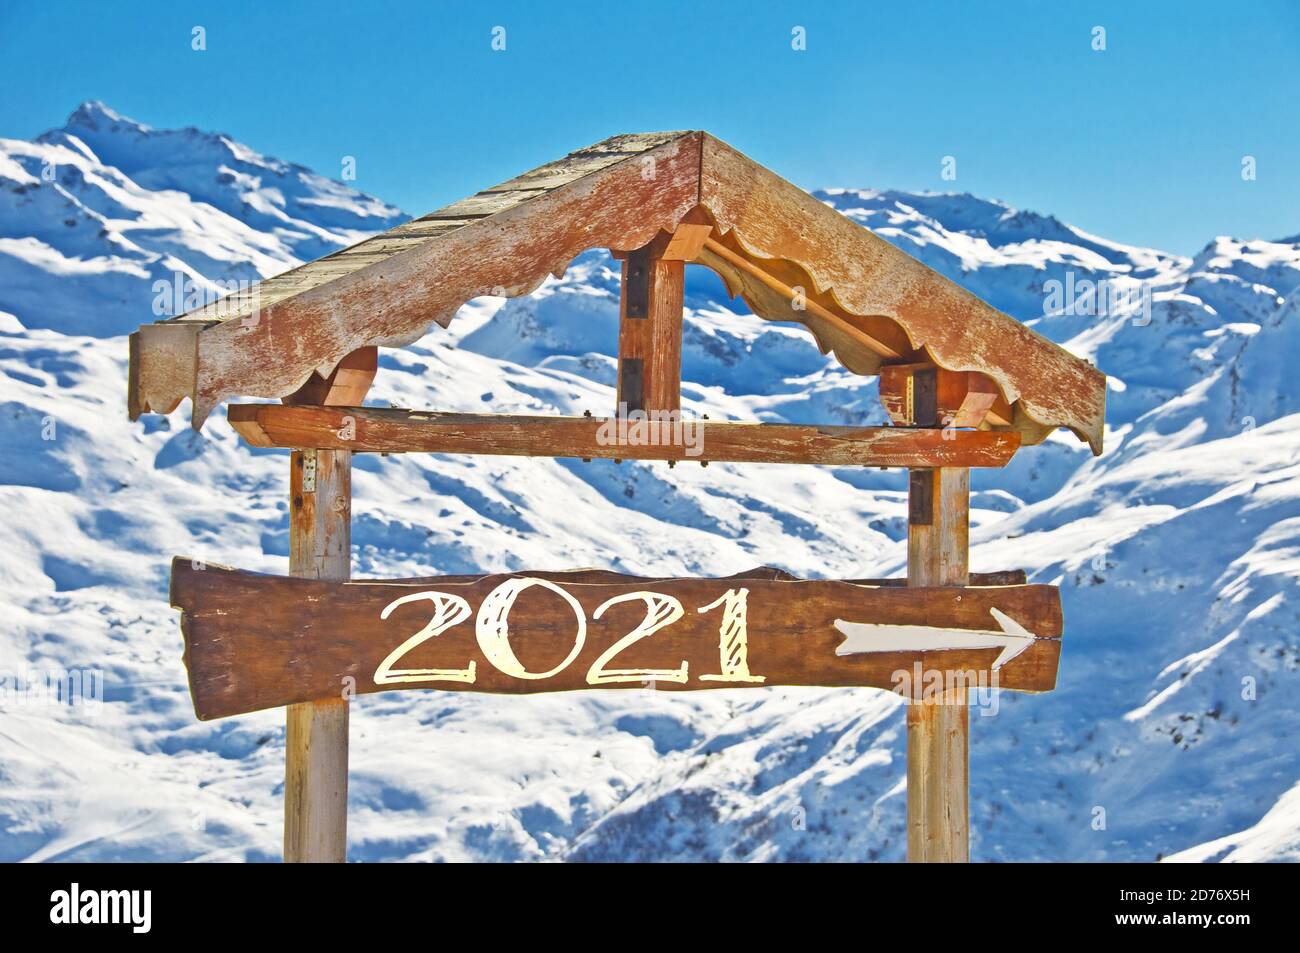 2021 geschrieben auf einem hölzernen Richtungsschild, blauer Himmel und Winter schneebedeckten Baumlandschaft Hintergrund frohe Feiertage Jahreszeiten Neujahr Grüße Stockfoto